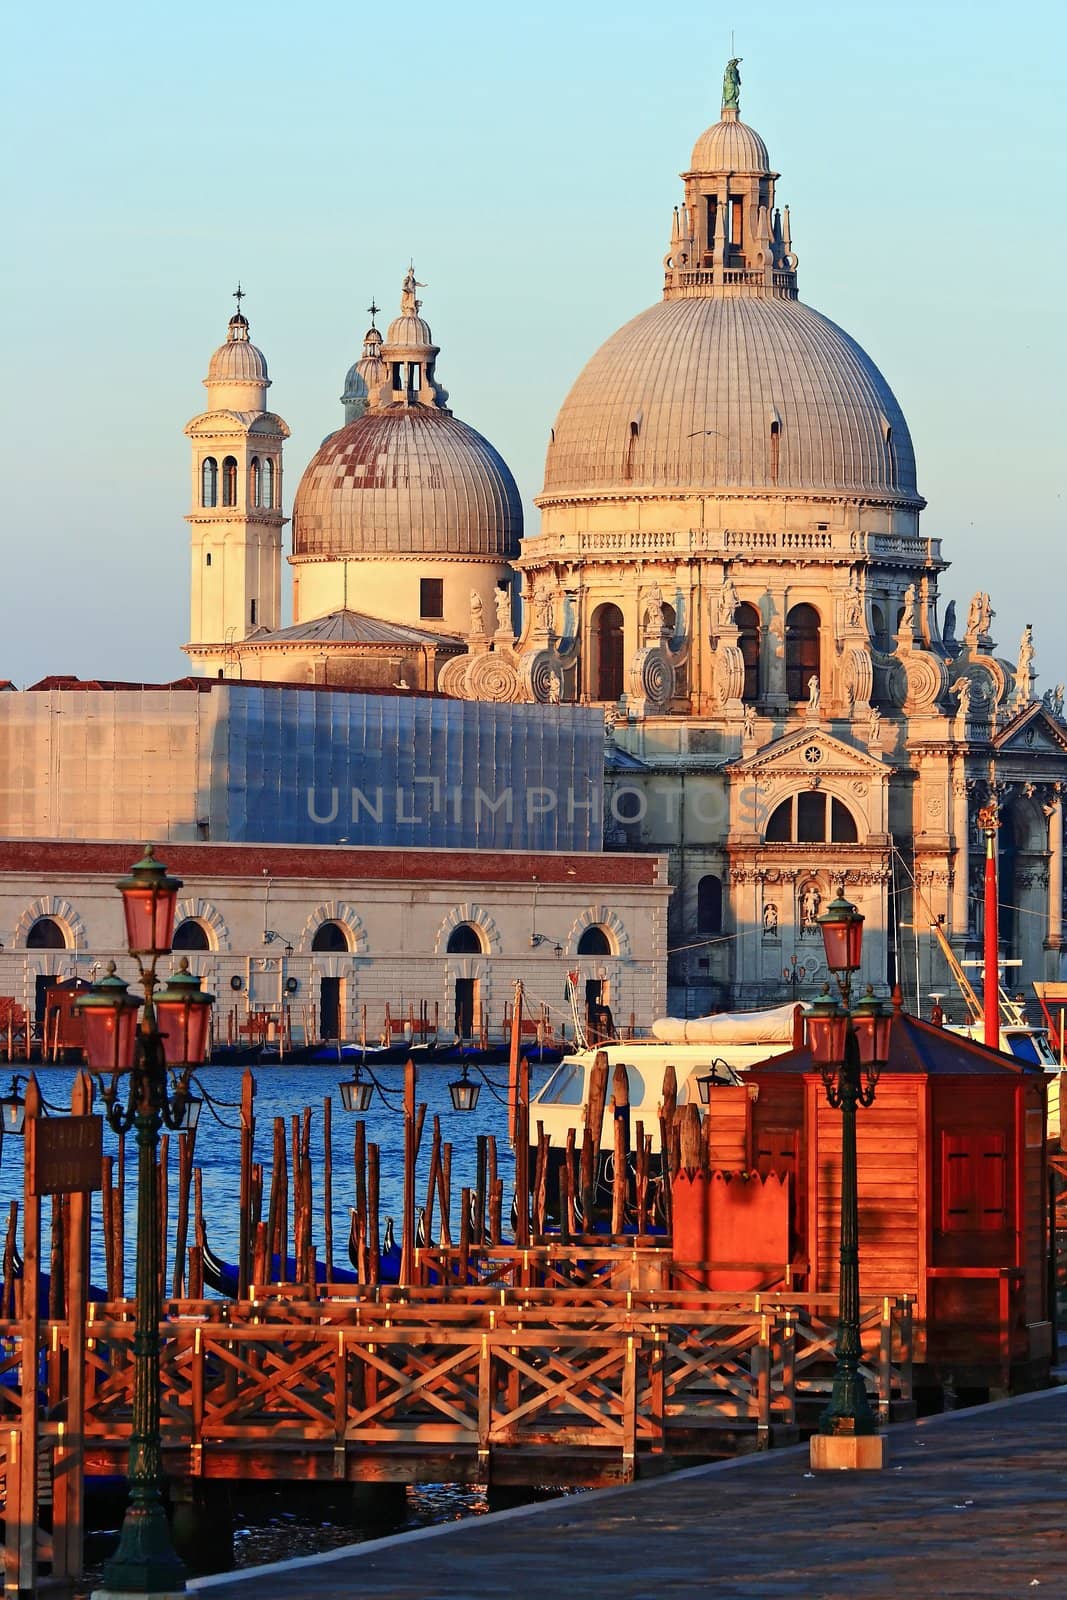 Santa Maria Della Salute, Church of Health, Grand canel Venice Italy in the morning, Vertical